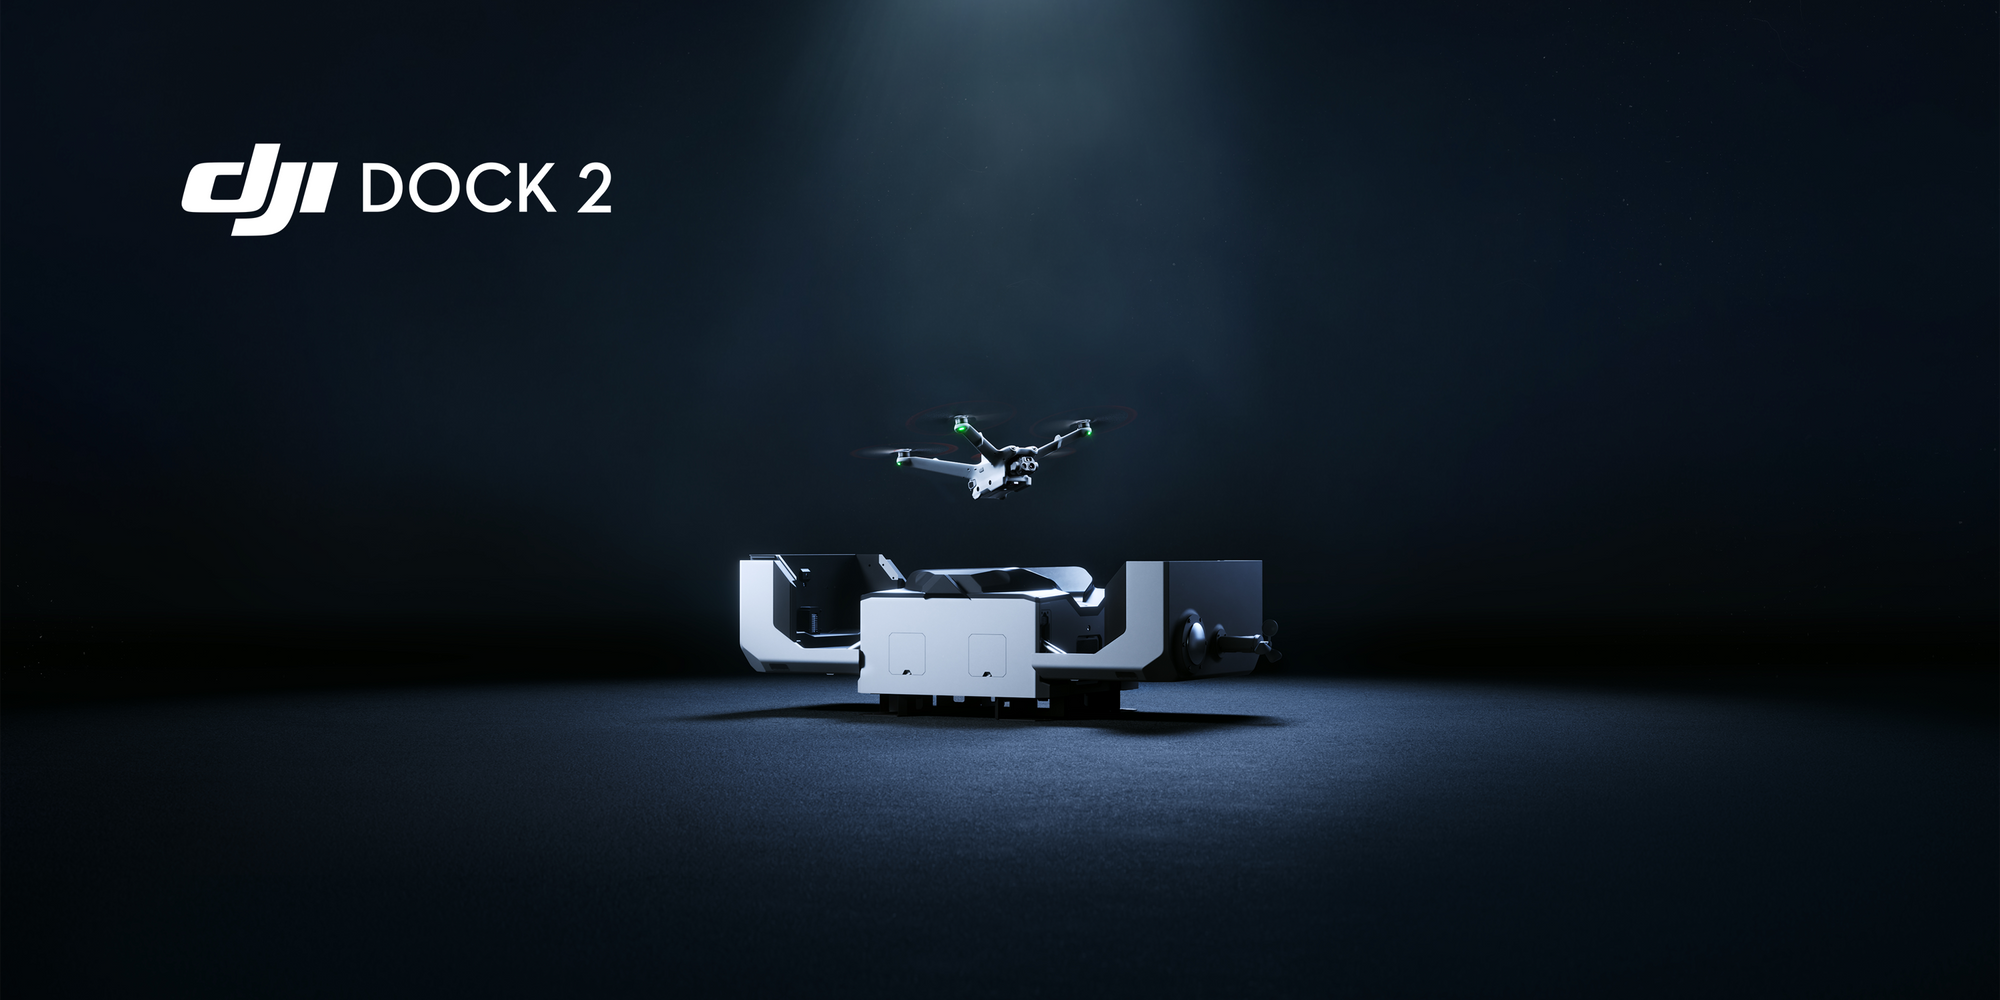 DJI Dock 2: An Autonomous Drone-In-A-Box